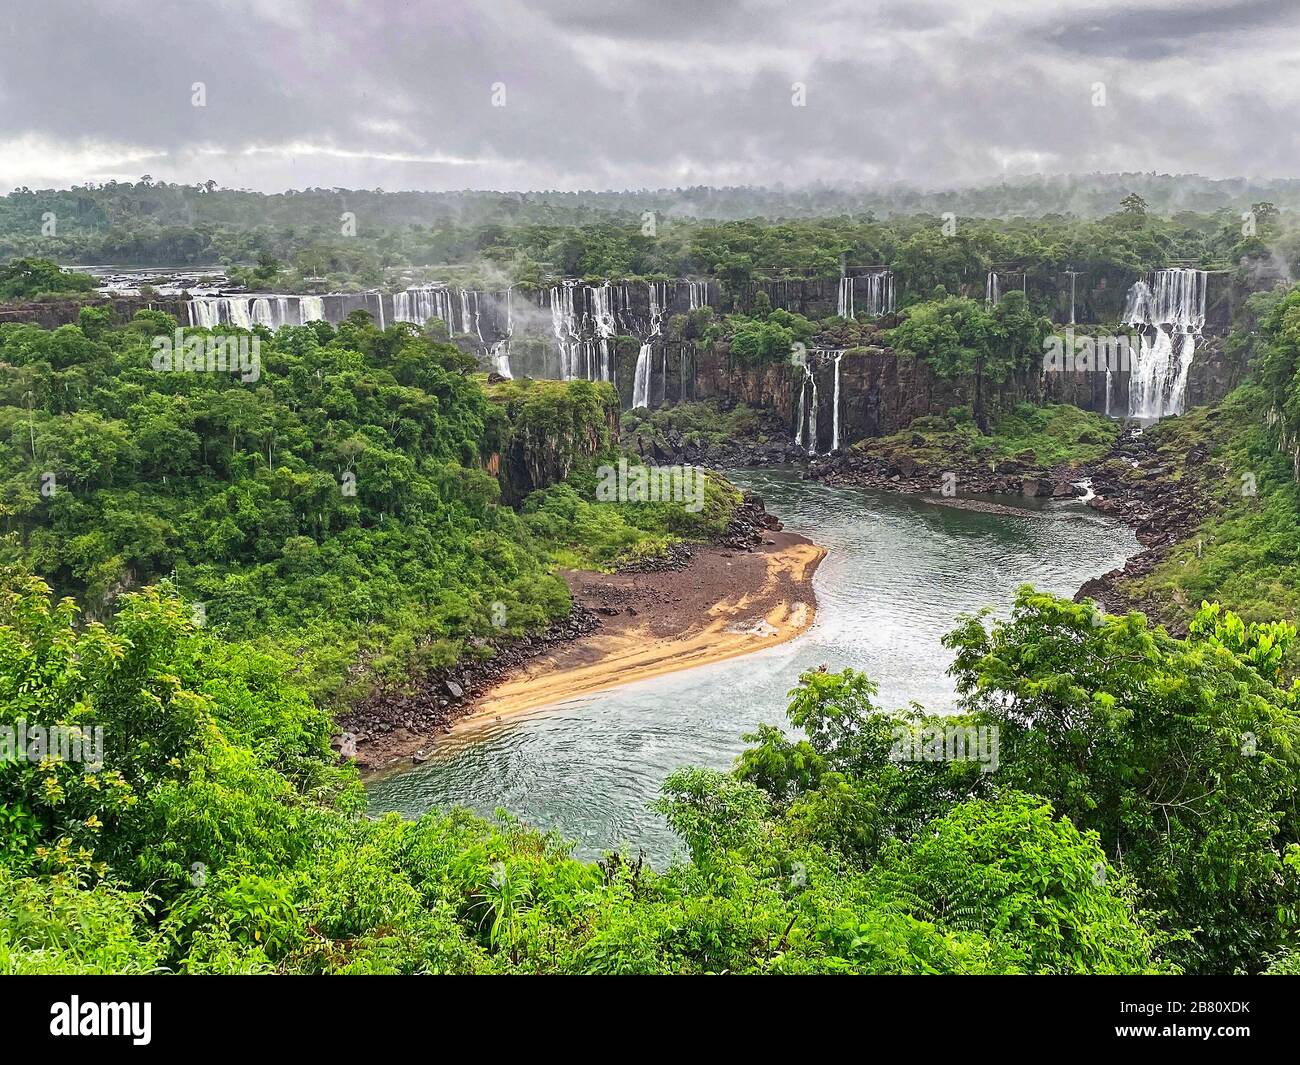 Parc national des chutes d'Iguazu; vue d'ensemble, de nombreuses chutes, rivière, végétation, nuages lourds, nature, Iguazu; Brésil; Iguacu; Amérique du Sud; été Banque D'Images